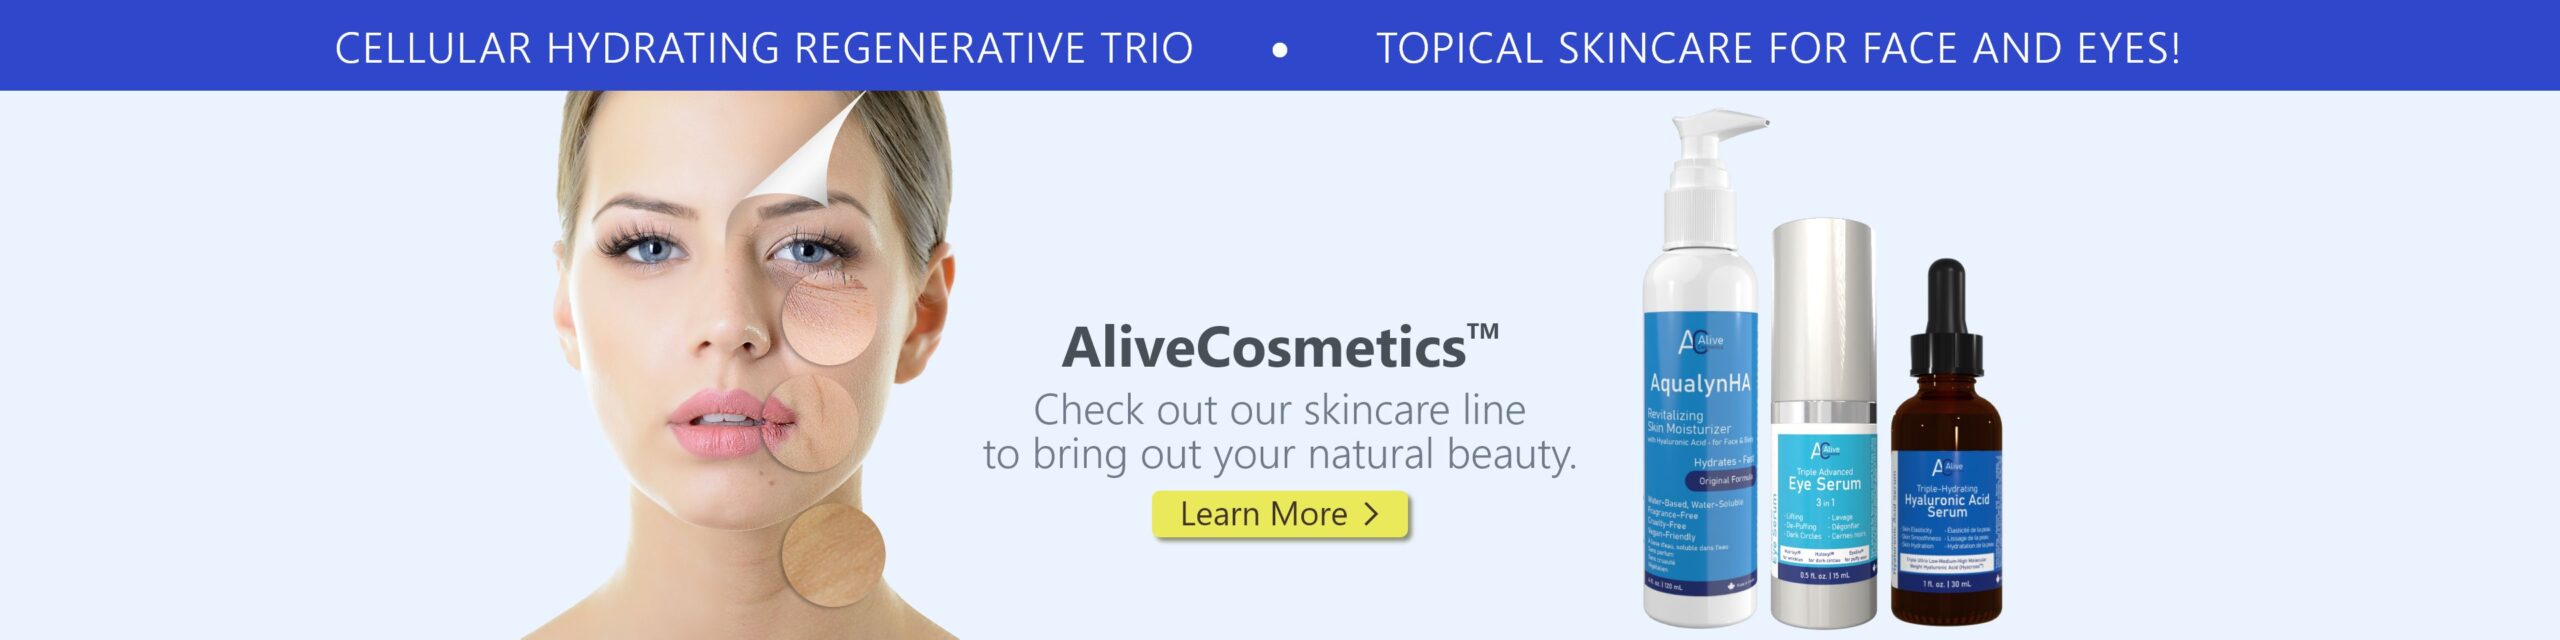 Alive Cosmetics